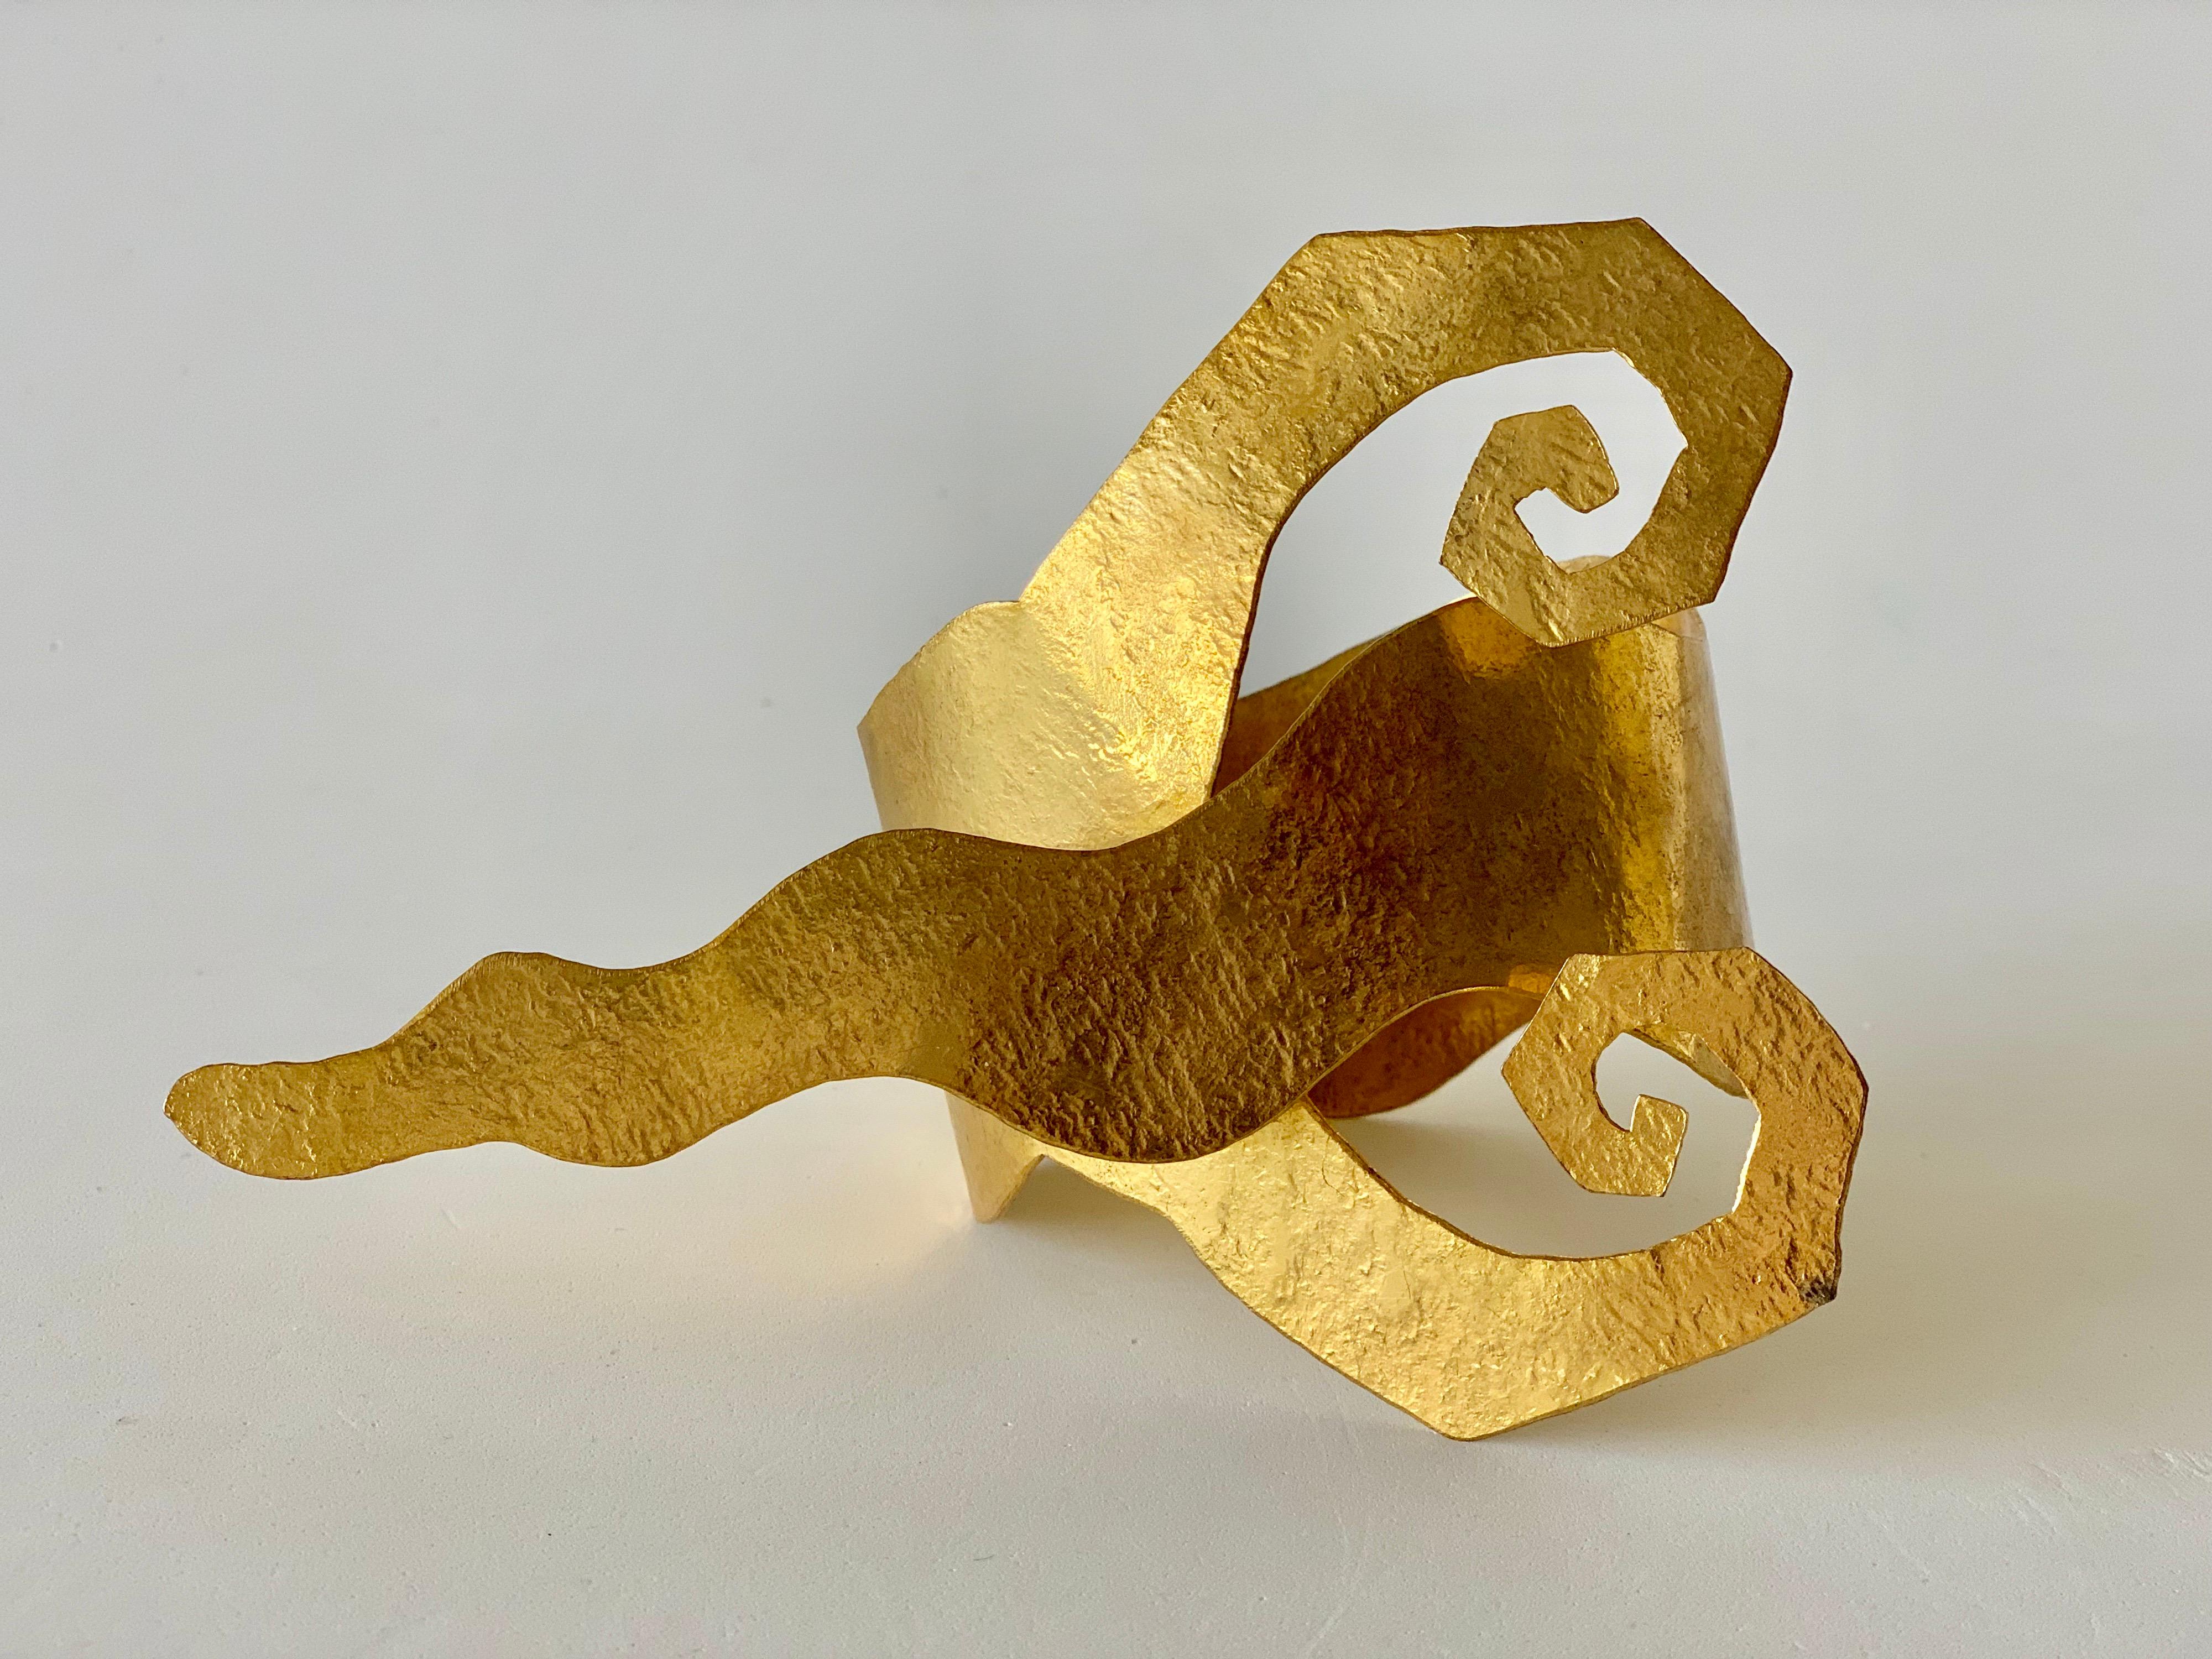 Einzigartiger architektonischer Vintage-Armreif von Herve Van Der Straeten - der modische und kantige Armreif besteht aus gehämmertem, vergoldetem, galvanisiertem Metall und weist ein einzigartiges, wellenförmiges Design auf. Leicht und angenehm zu